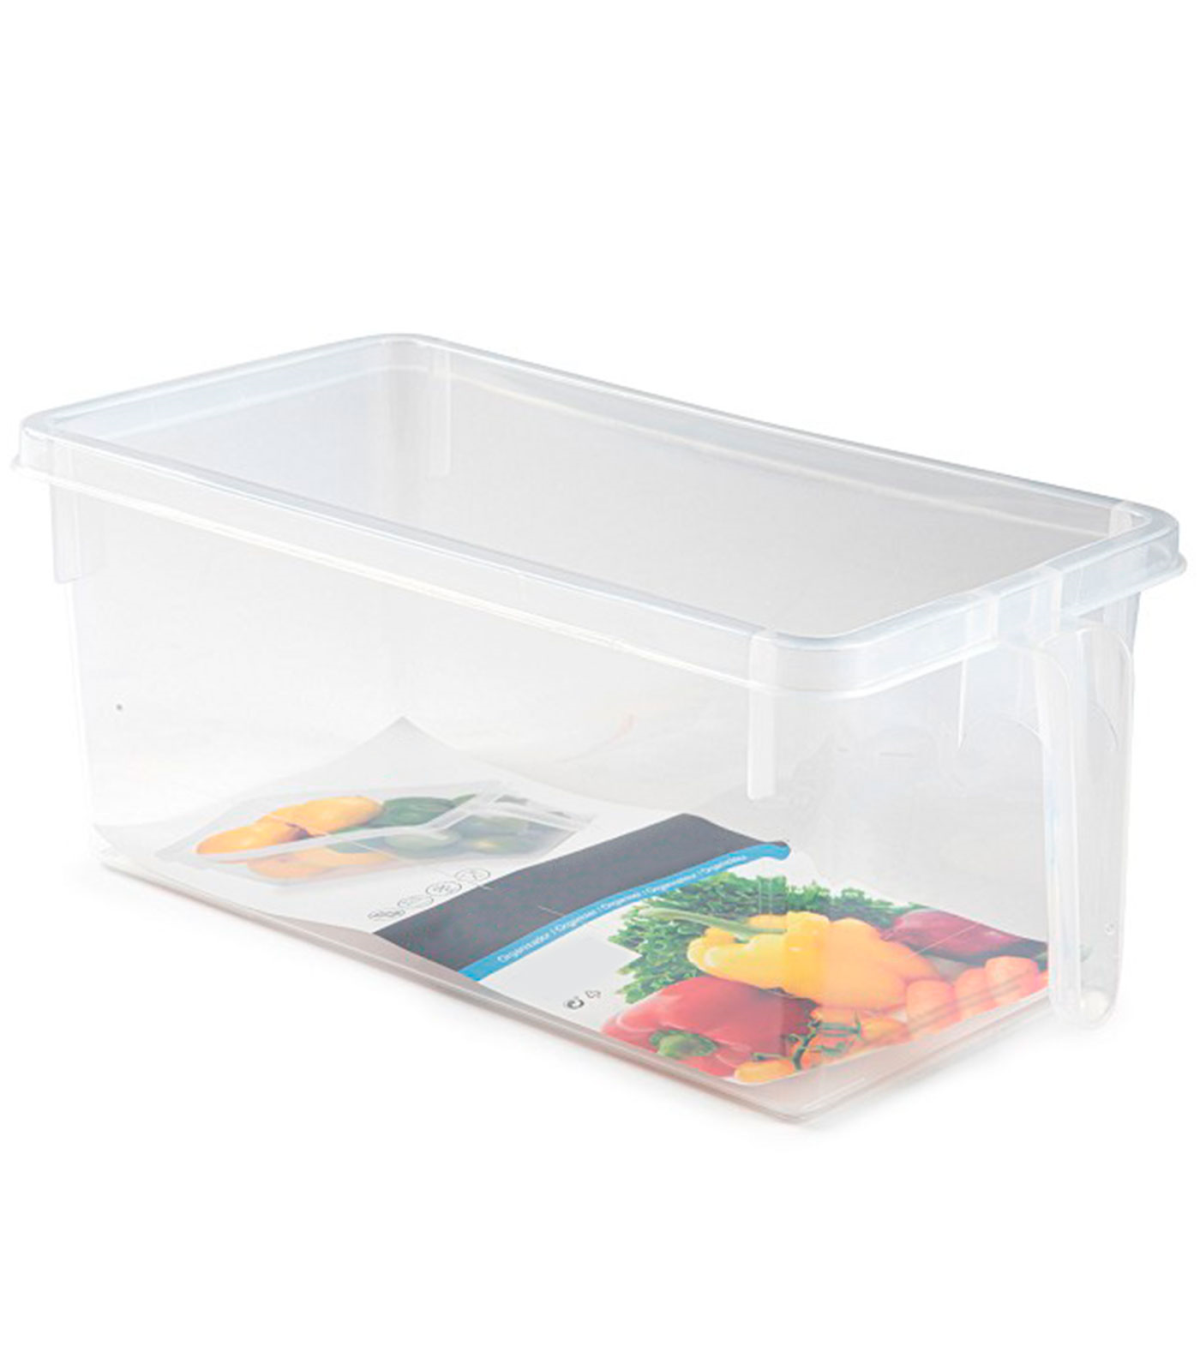 Tradineur - Cajón organizador reutilizable para frigorifico Nº 9 -  Fabricado en plástico - Recipiente de plástico transparente 